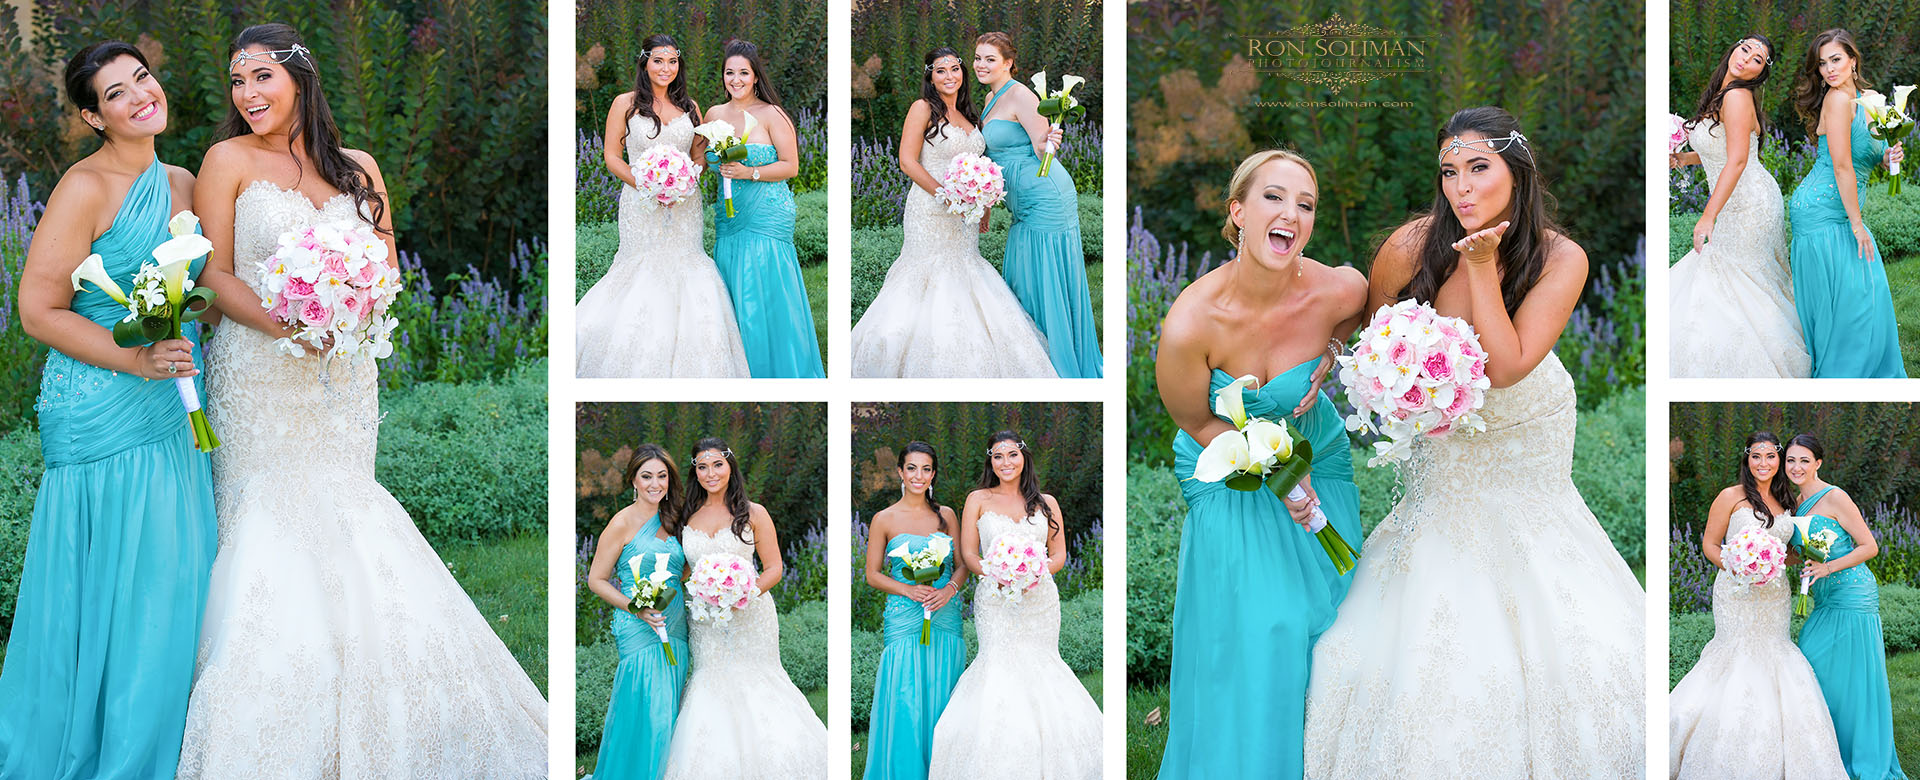 funny bridesmaids photos